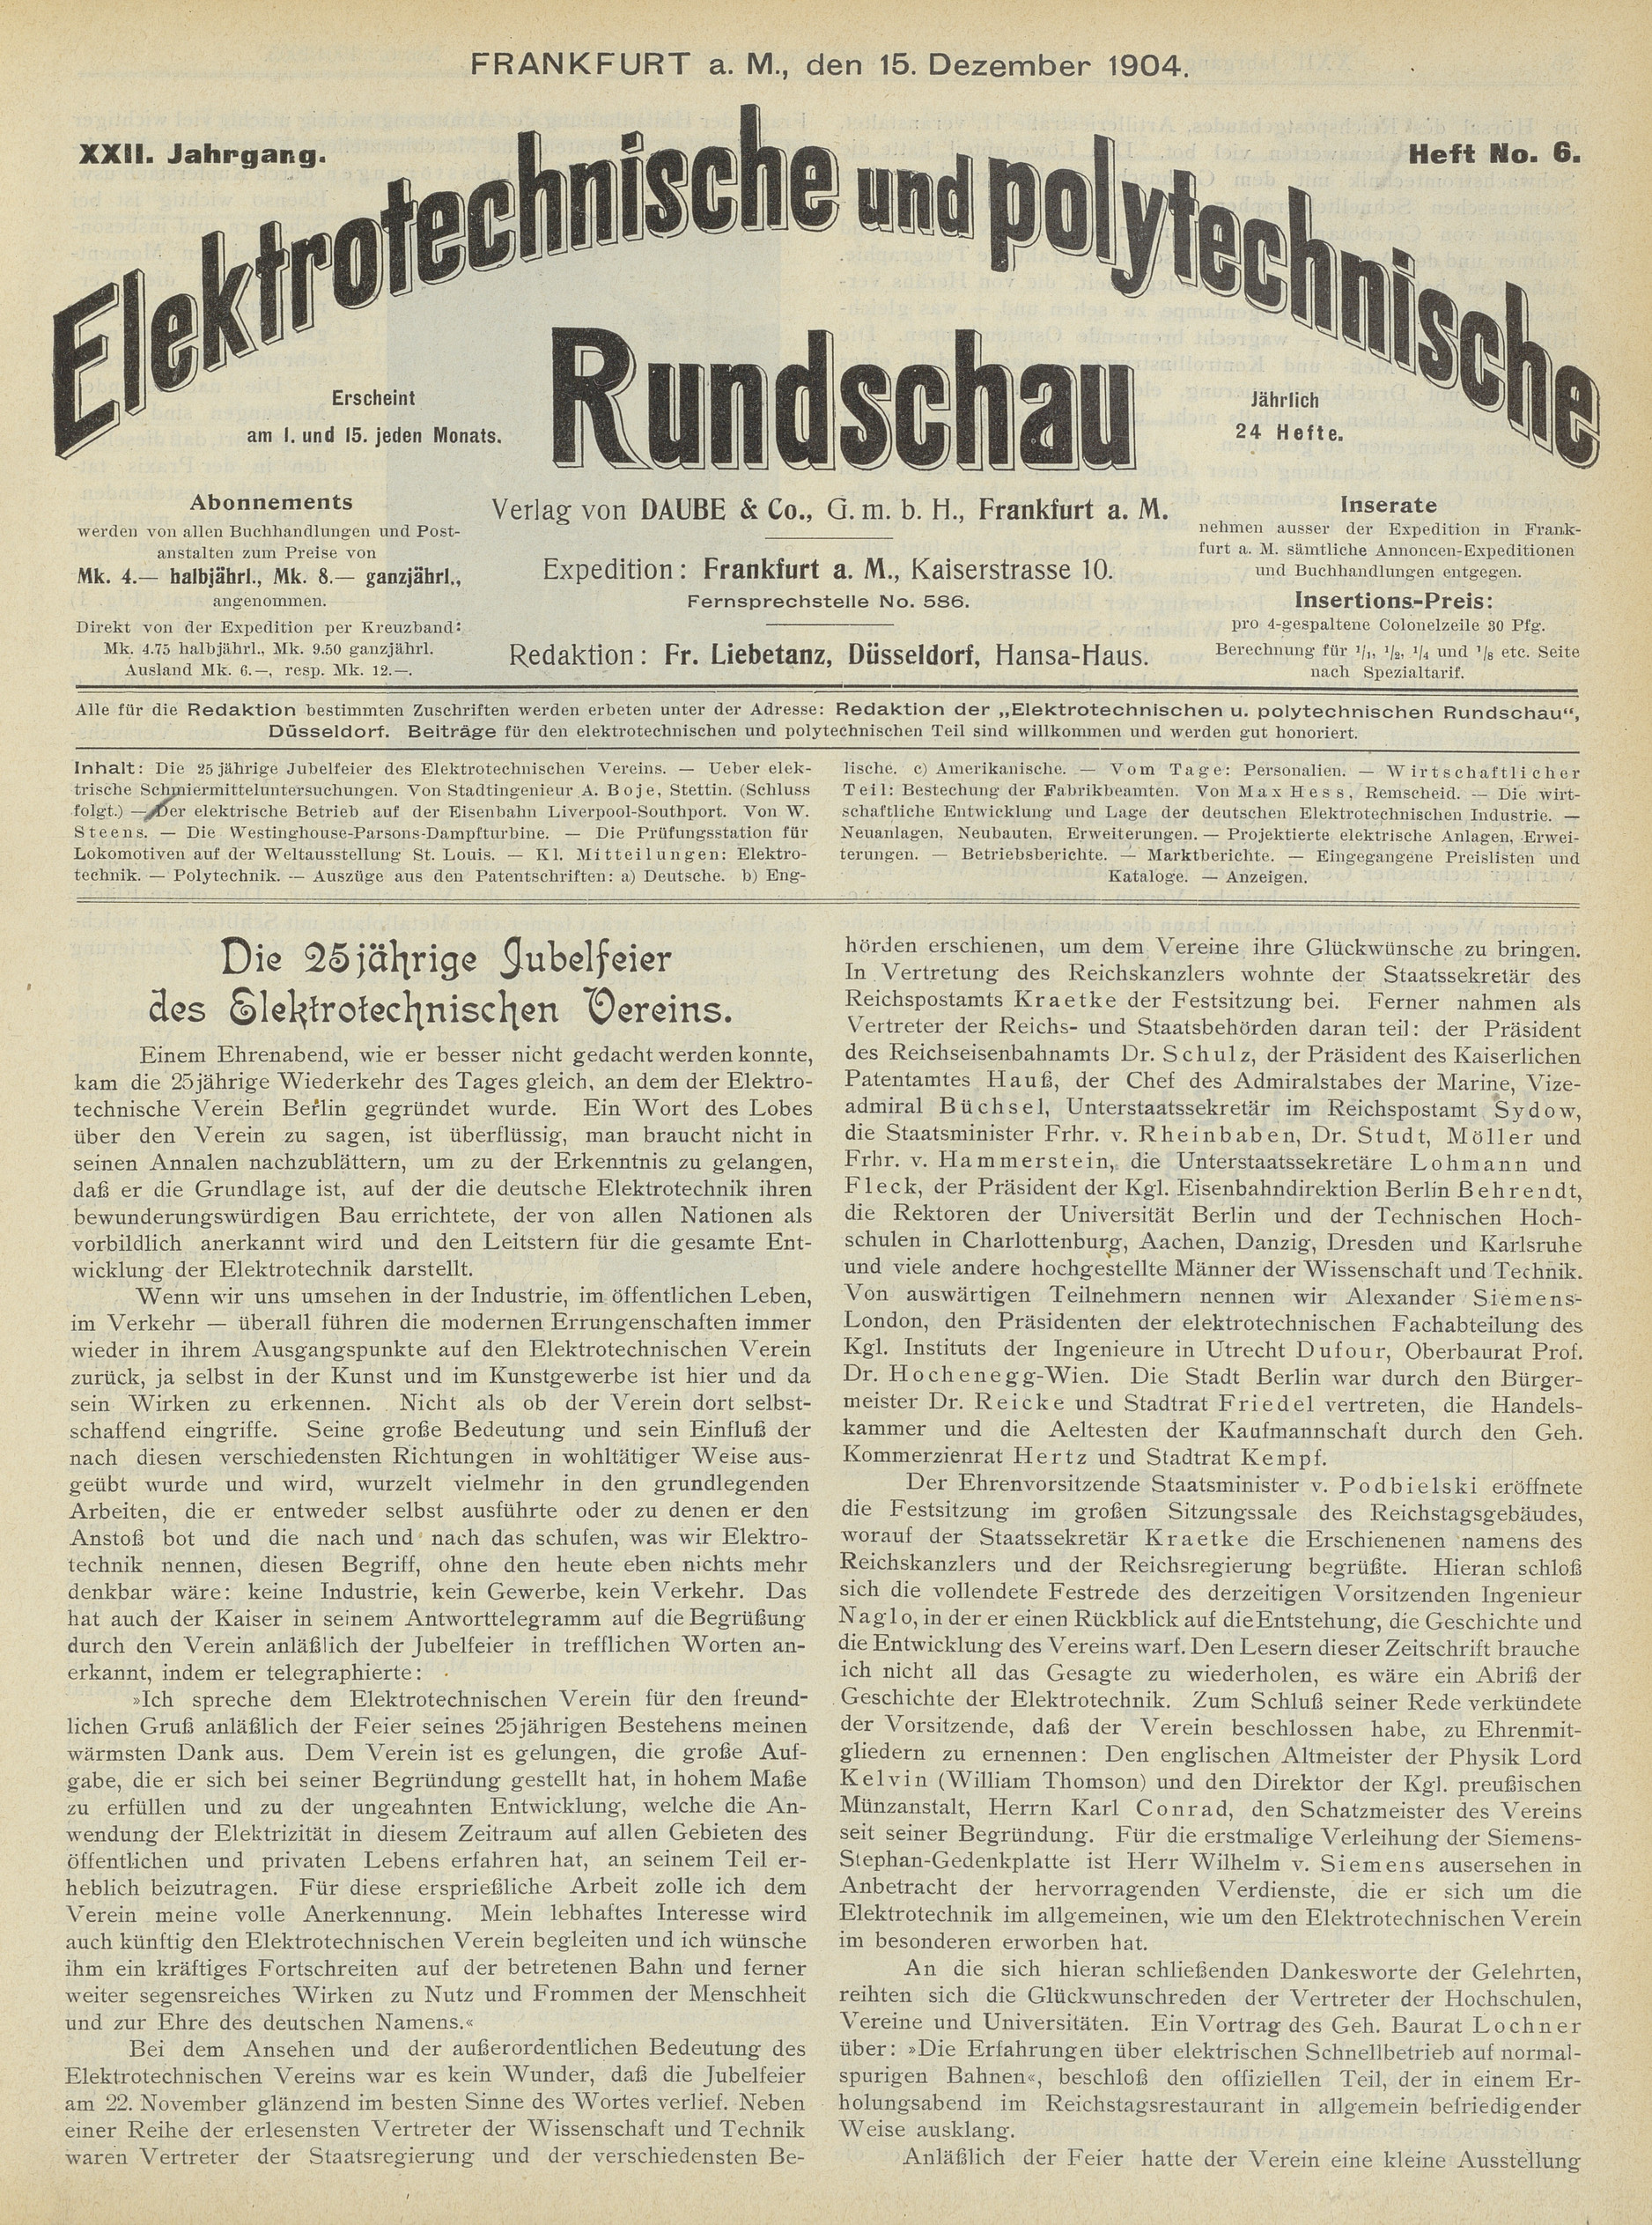 Elektrotechnische und polytechnische Rundschau, XXII. Jahrgang, Heft No. 6